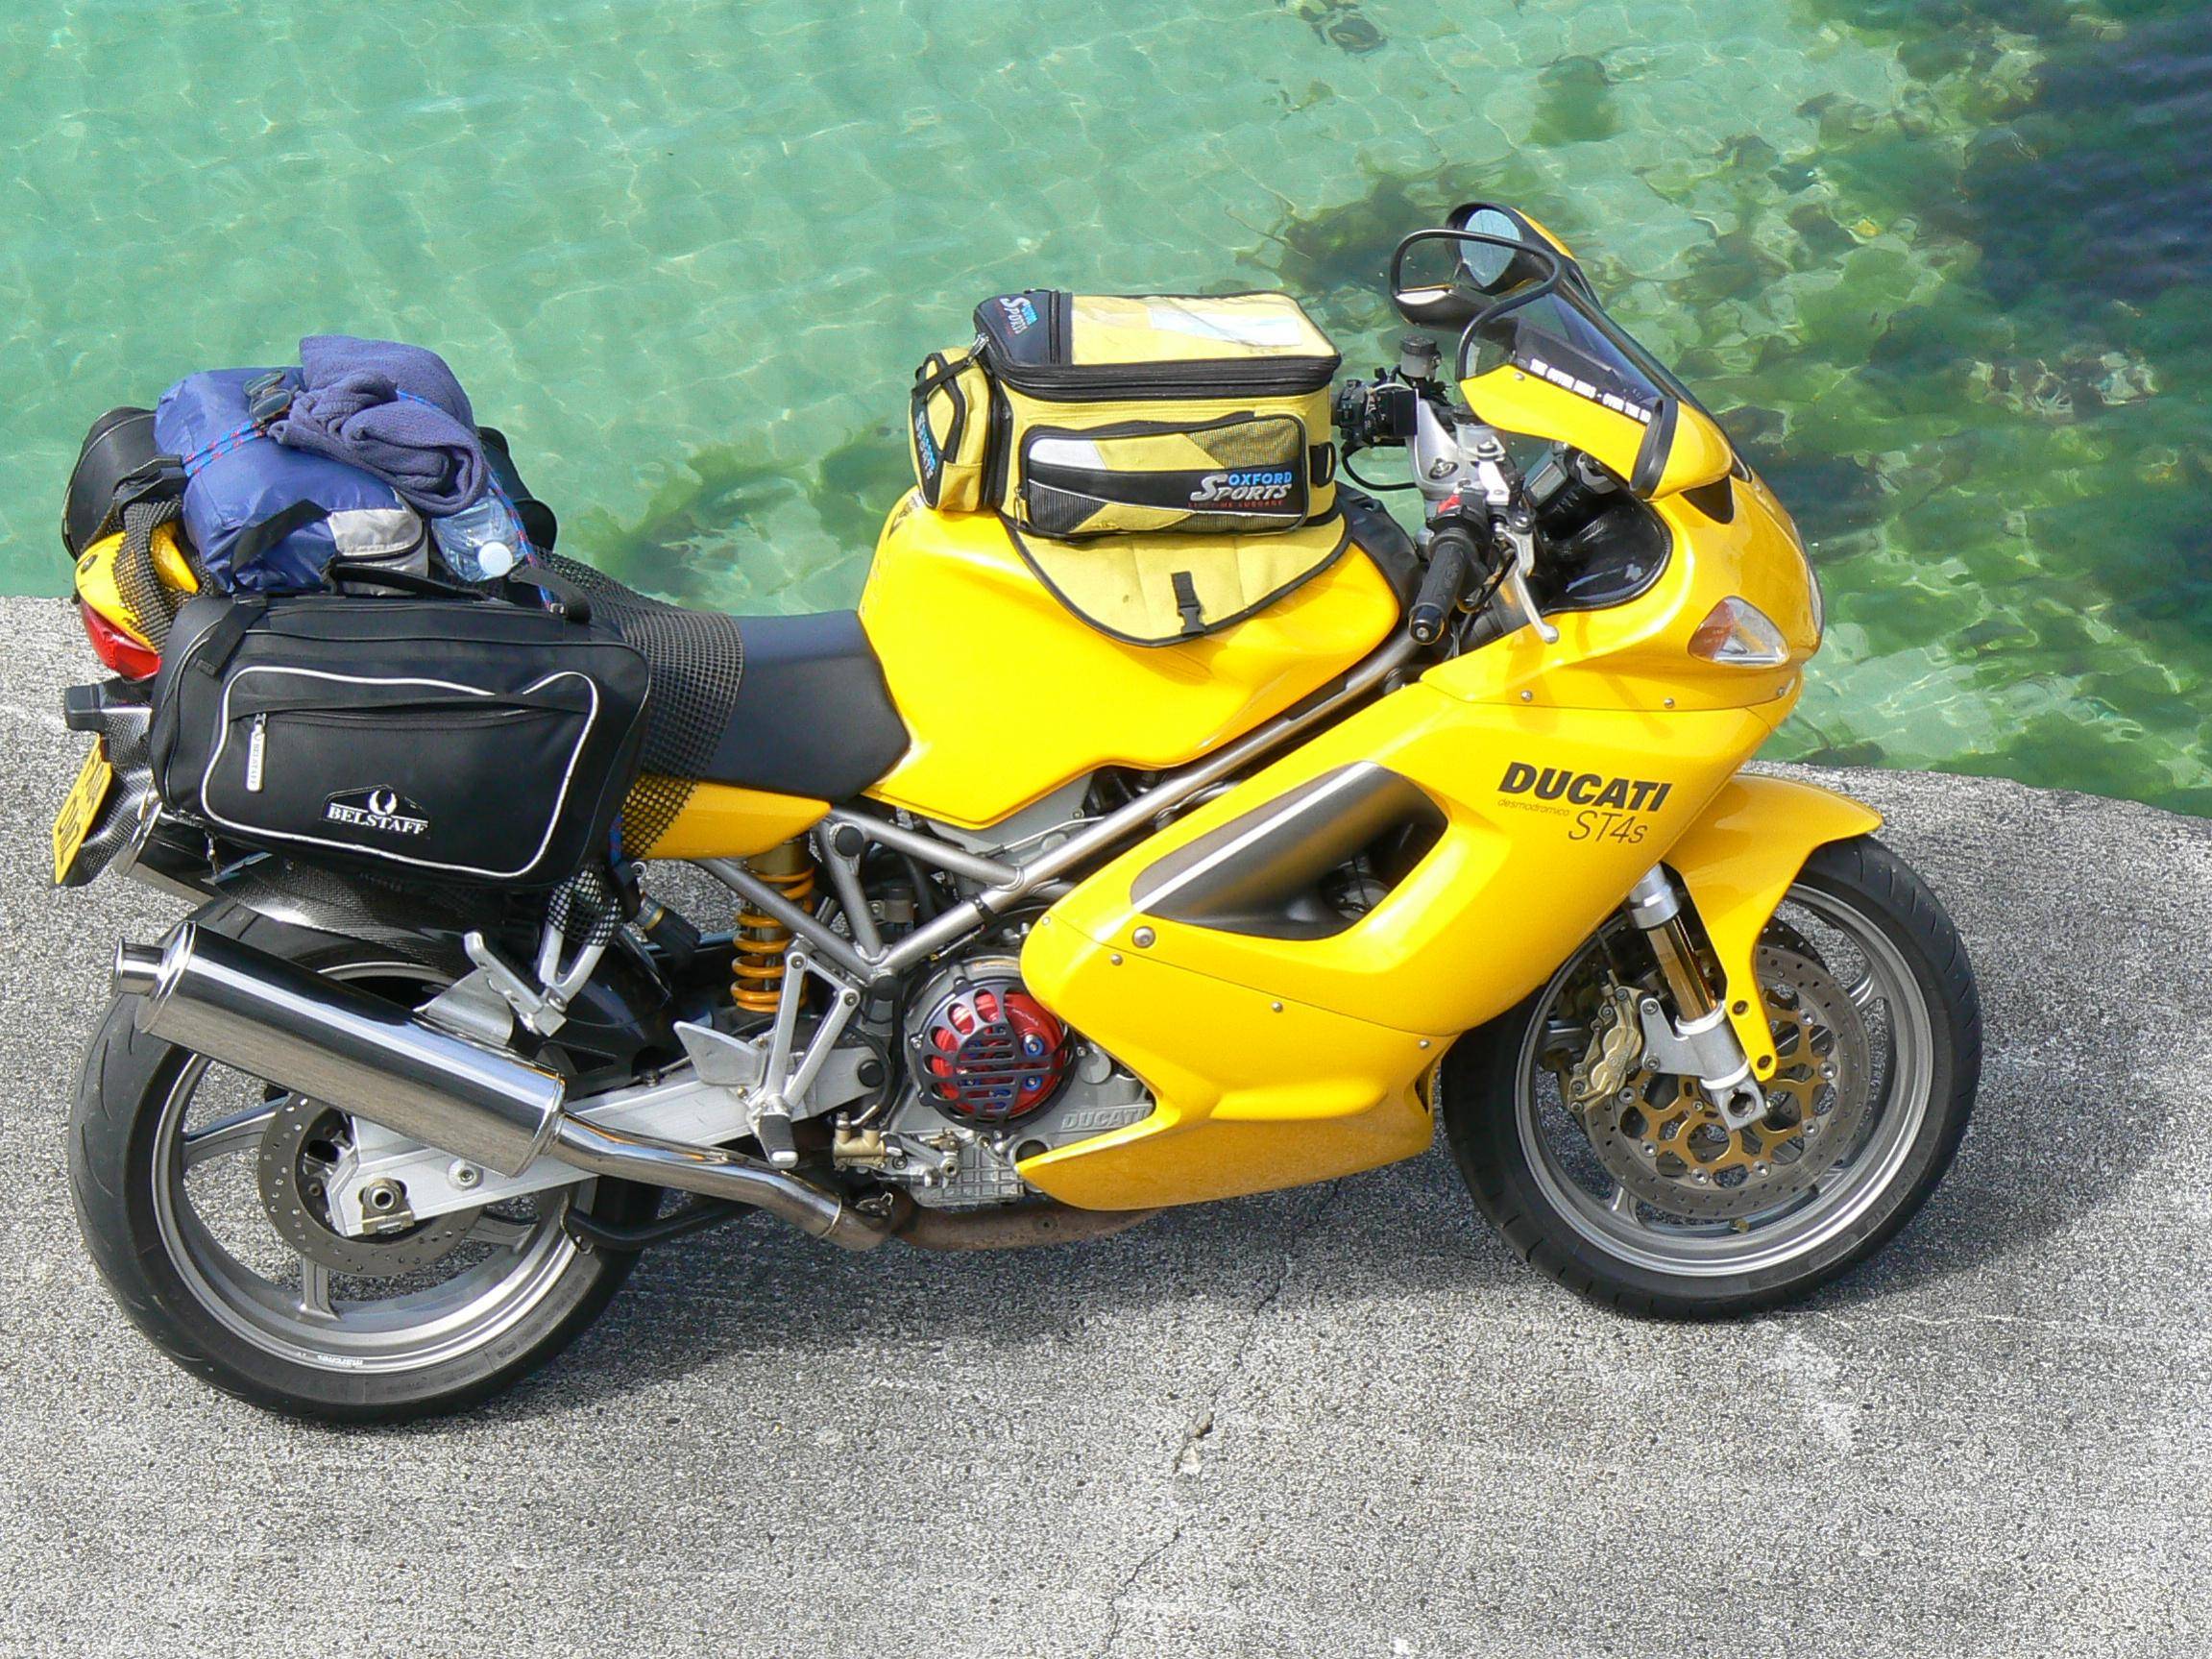 Мотоцикл ducati st4 s abs 2003 - разбираемся в общих чертах